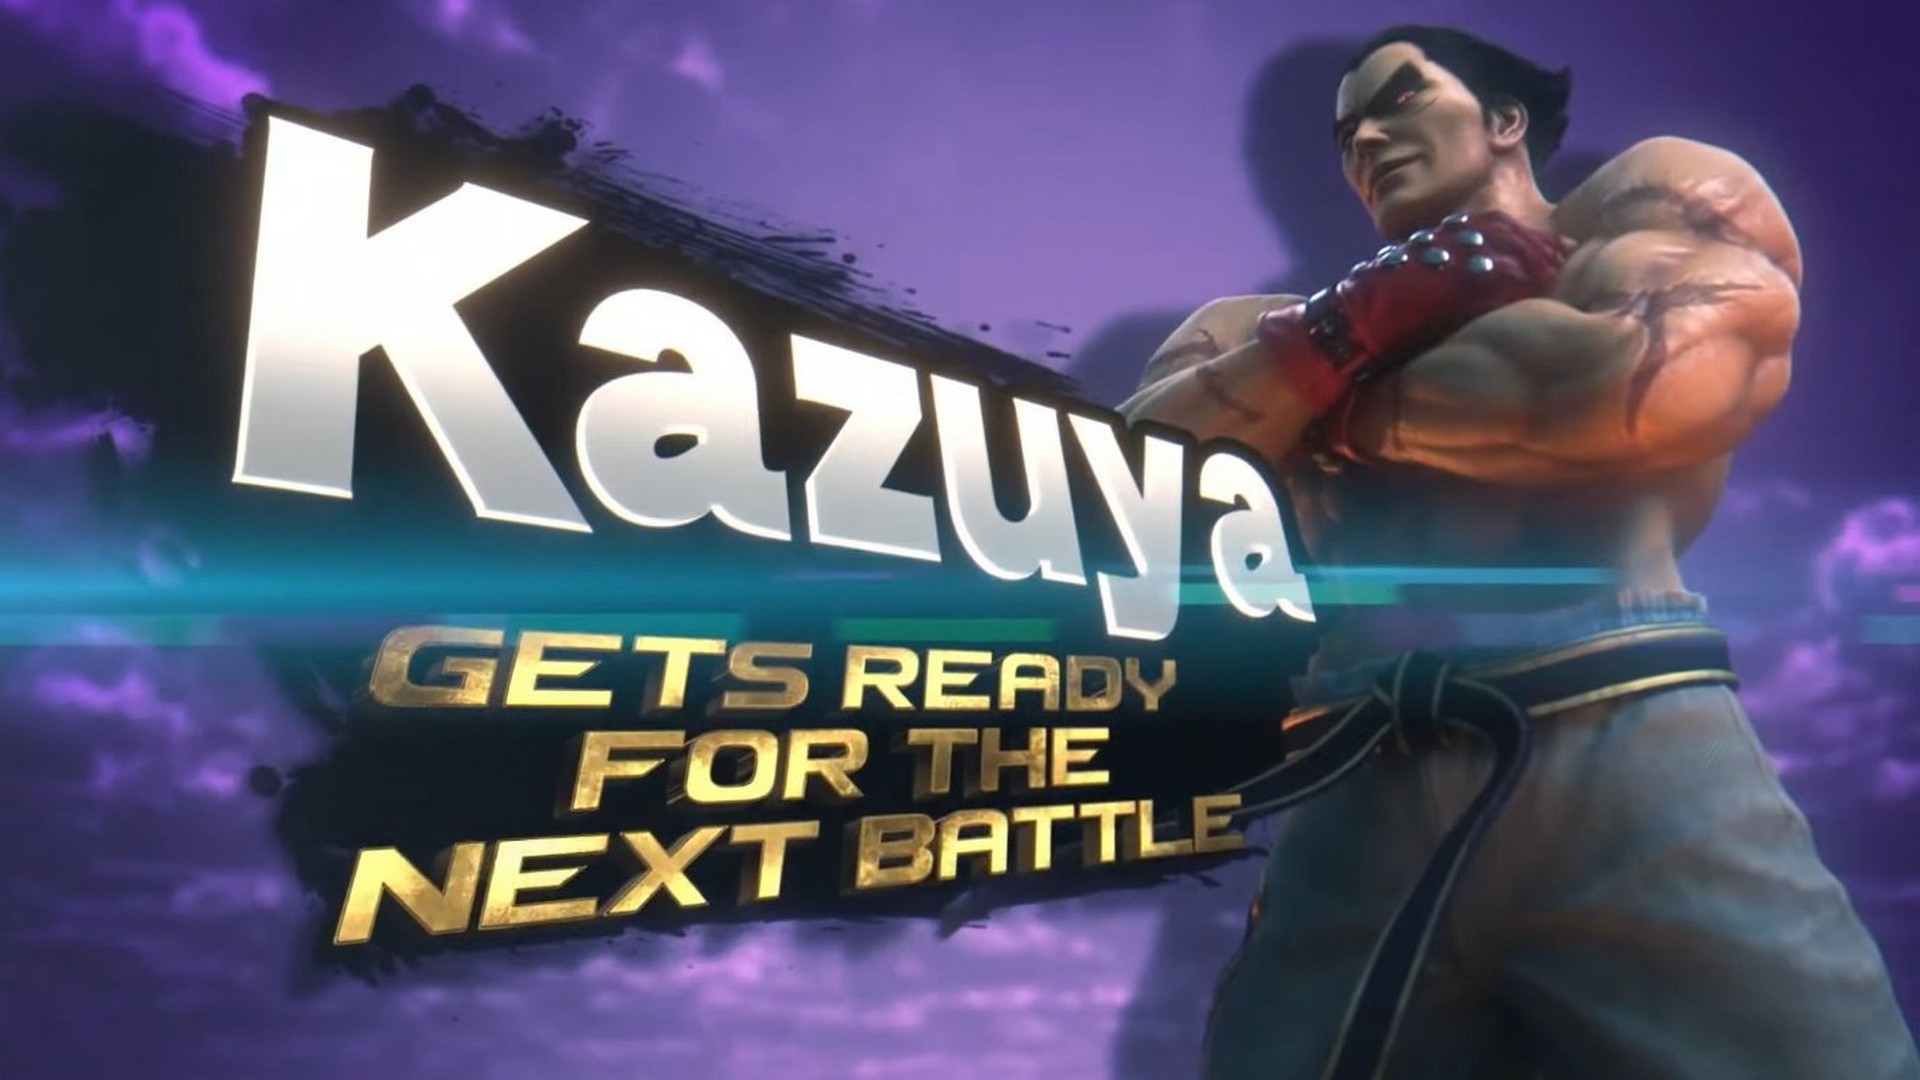 Kazuya Mishima From The Tekken Series Possesses Super Smash Bros. Ultimate On 30th June